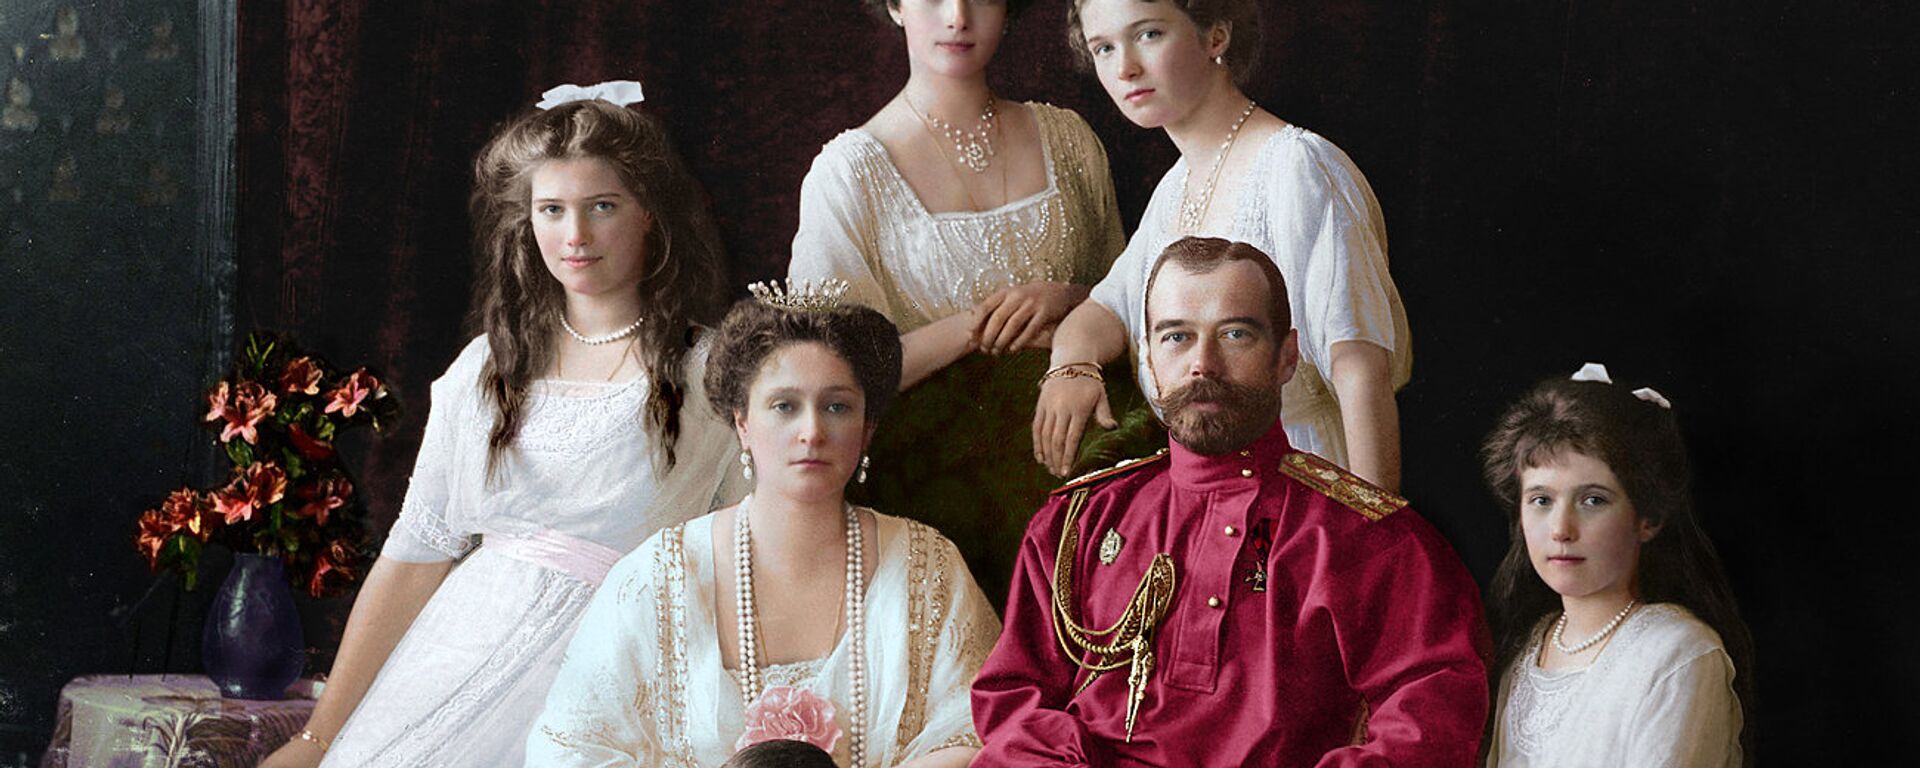 Çar İkinci Nikolay Aleksandroviç Romanov ve ailesi - Sputnik Türkiye, 1920, 07.02.2022